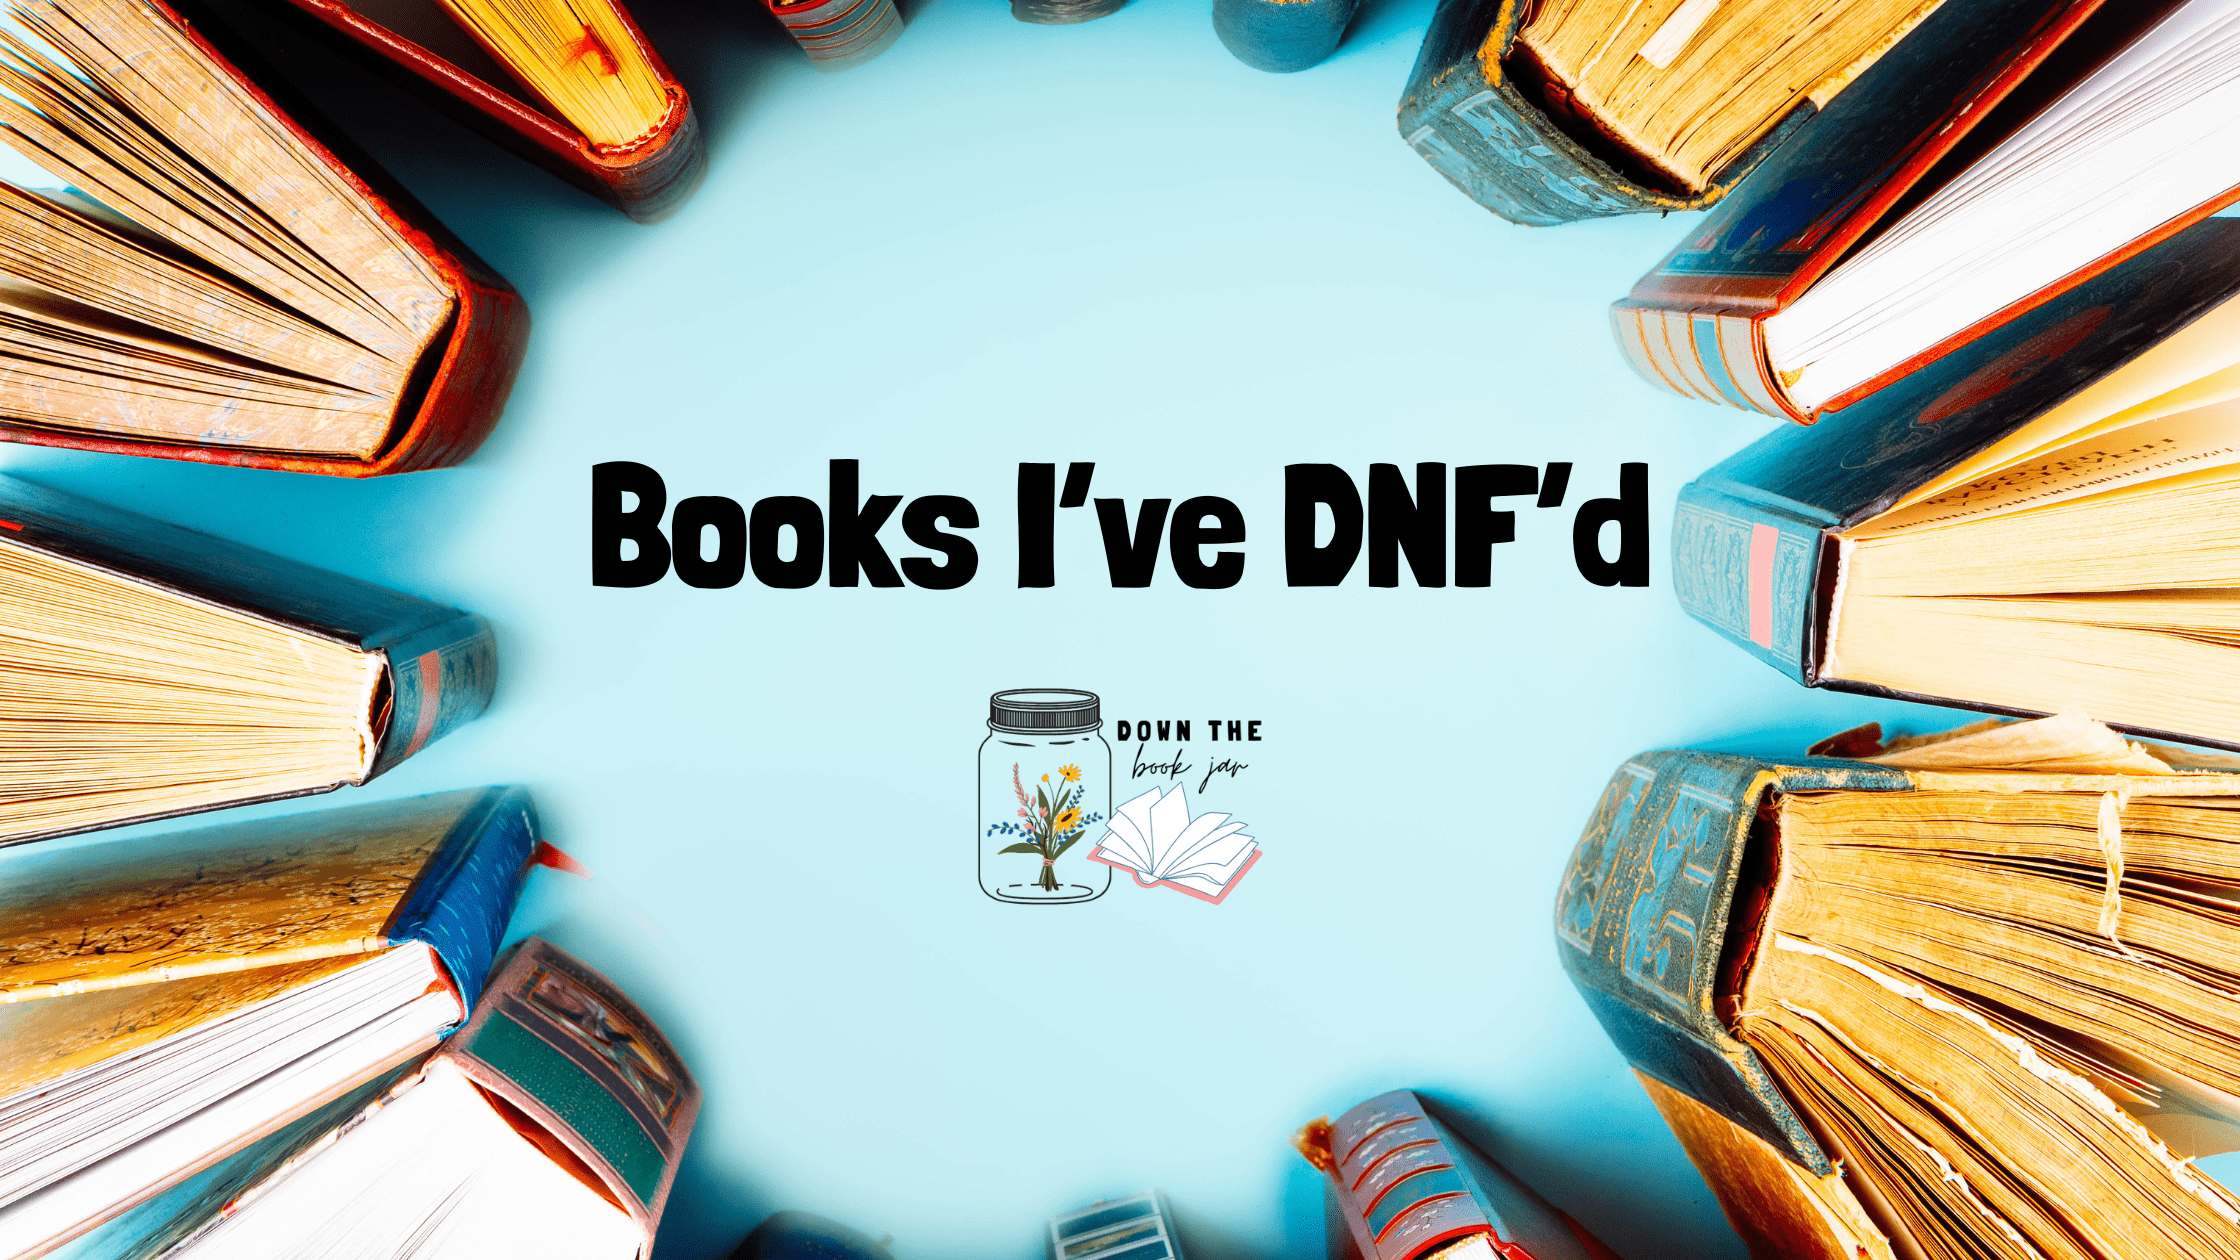 Books I’ve DNF’d